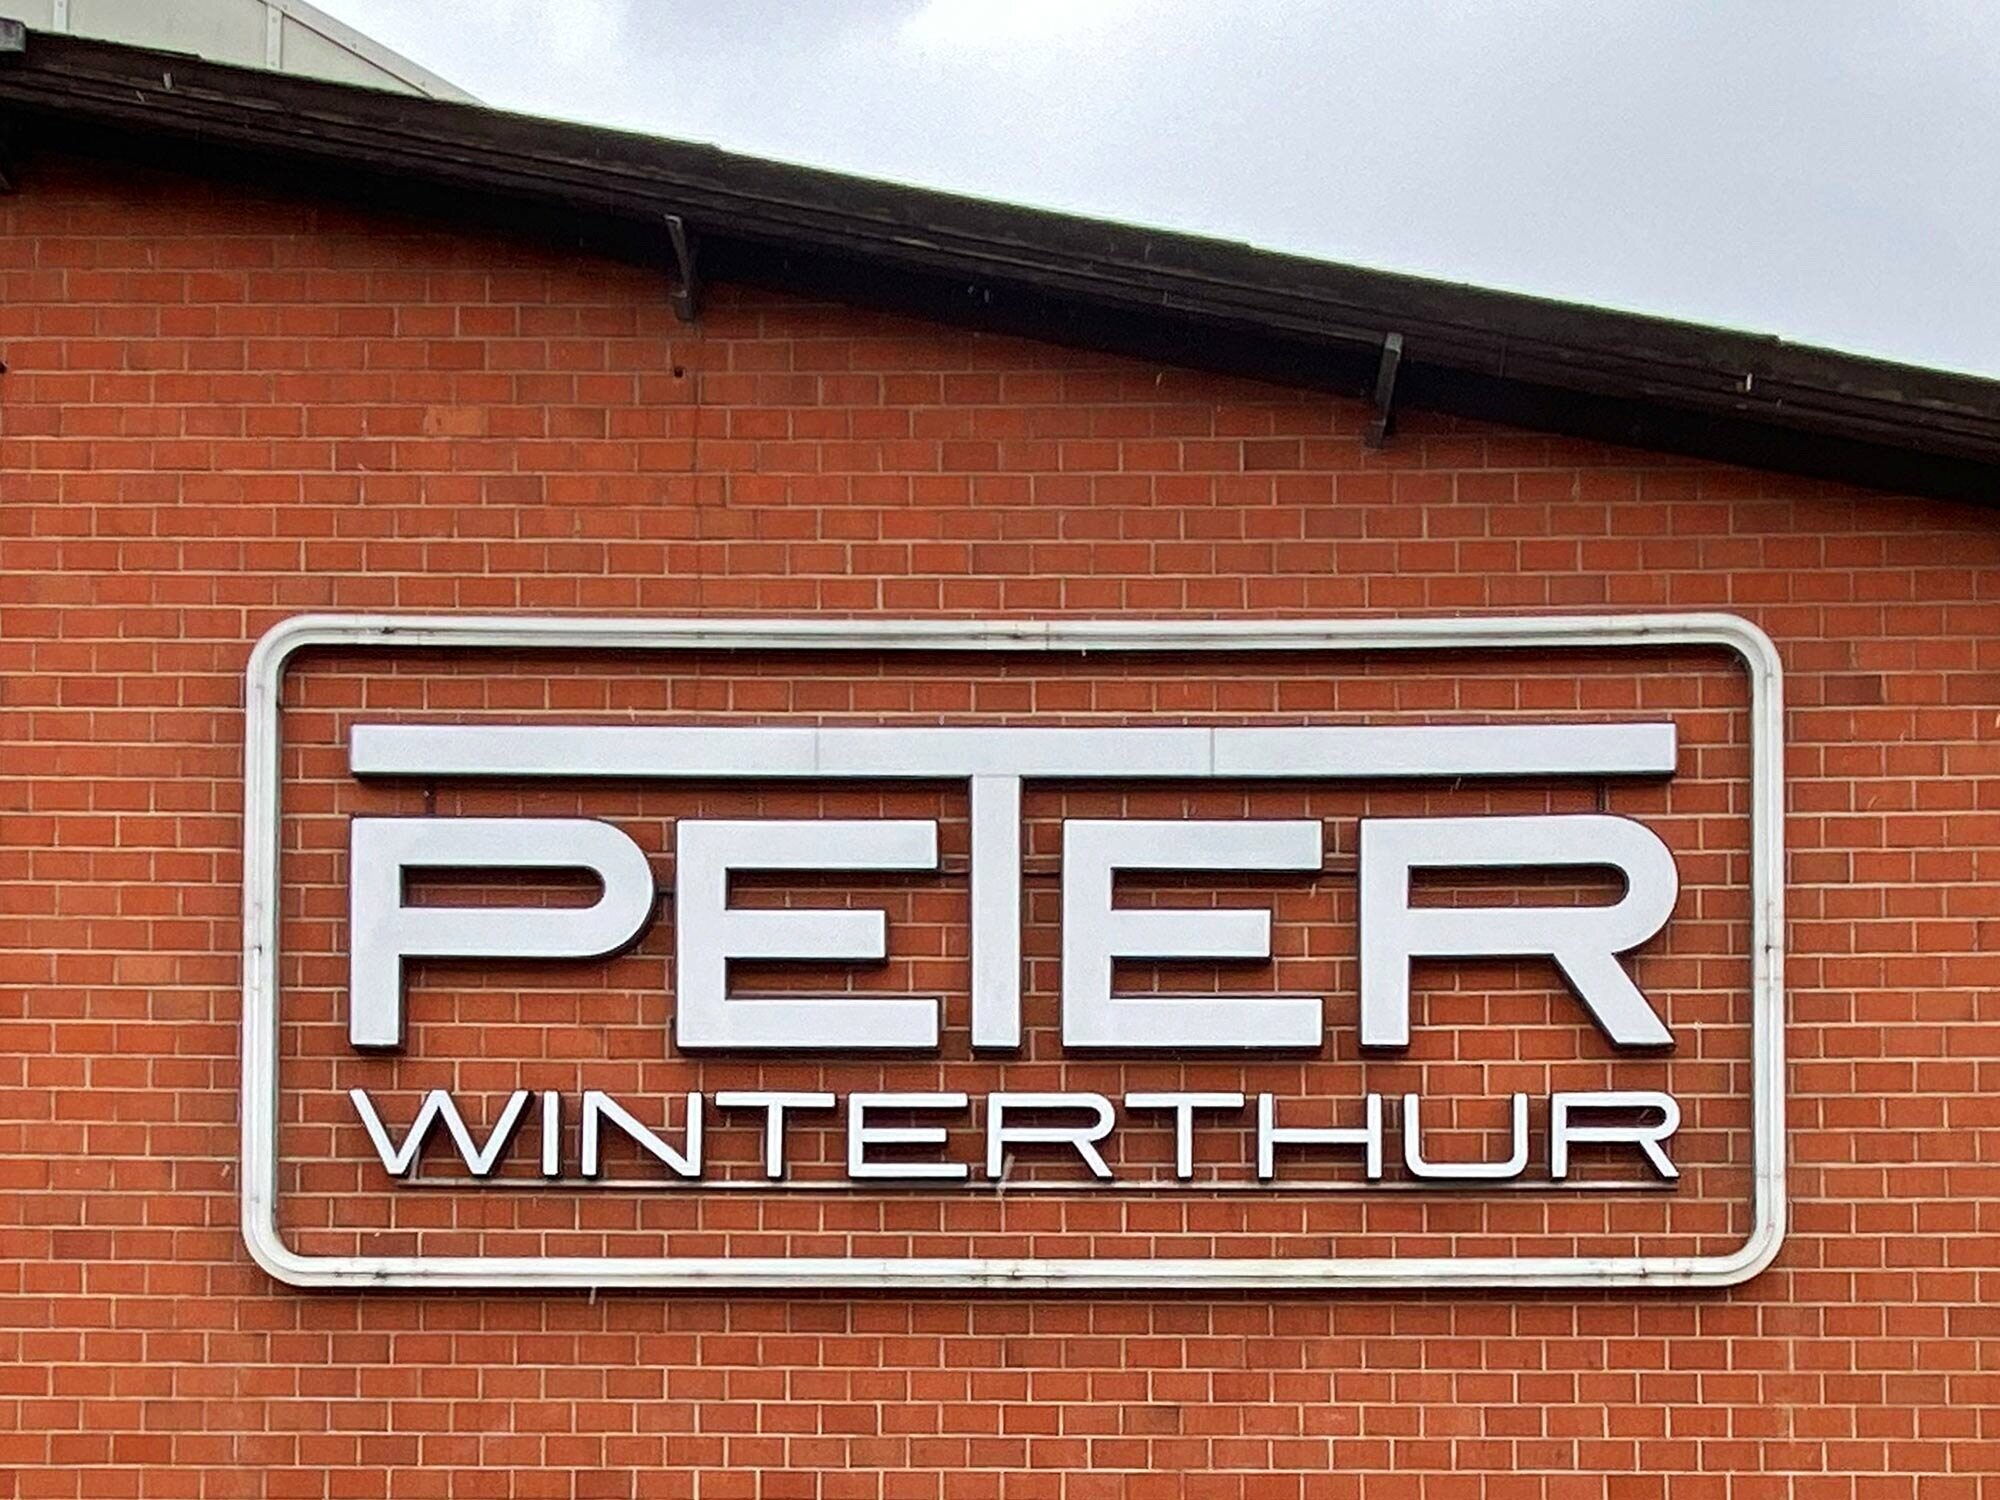 peter-winterthur-immobilien-gewerbe-vermietung-fassade-logo-qf-2.jpg